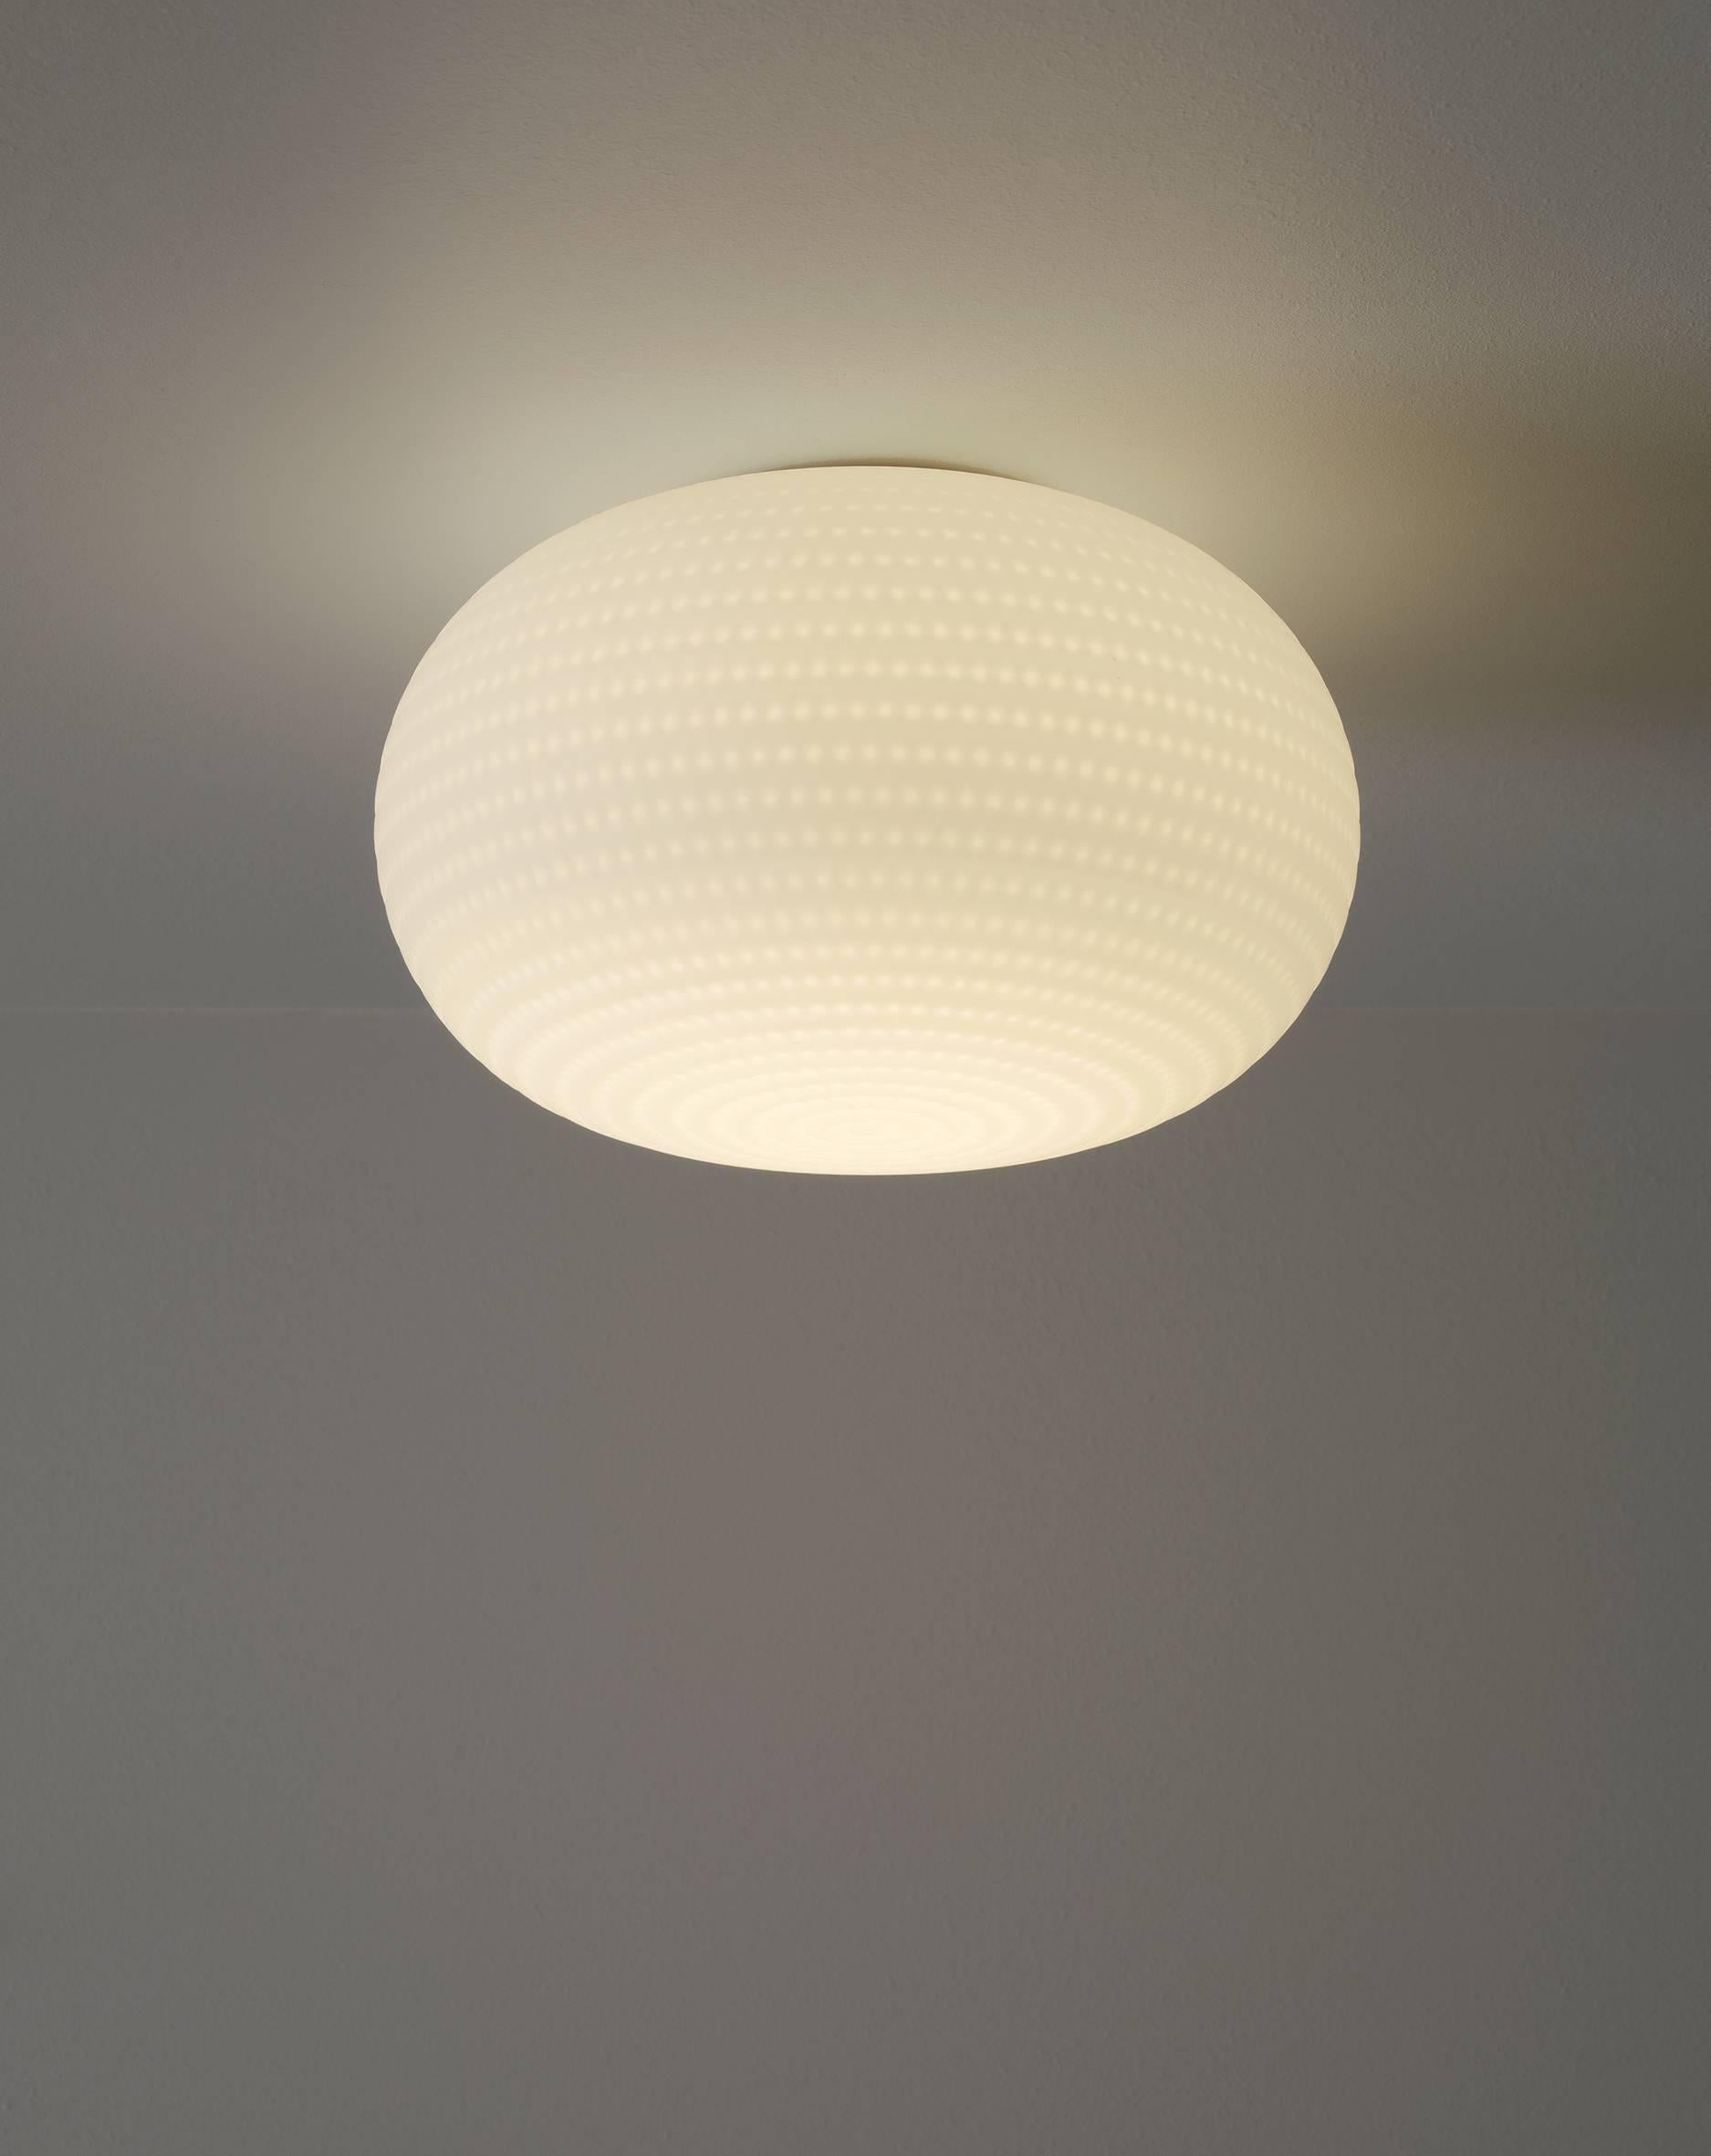 Conçu par Matti Klenell en 2015 et fabriqué par Fontana Arte, le lampadaire Bianca est une famille de lampes avec diffuseur en verre soufflé, comprenant des versions suspension, sol, mur/plafond et table, ces dernières avec ou sans socle. Sa forme